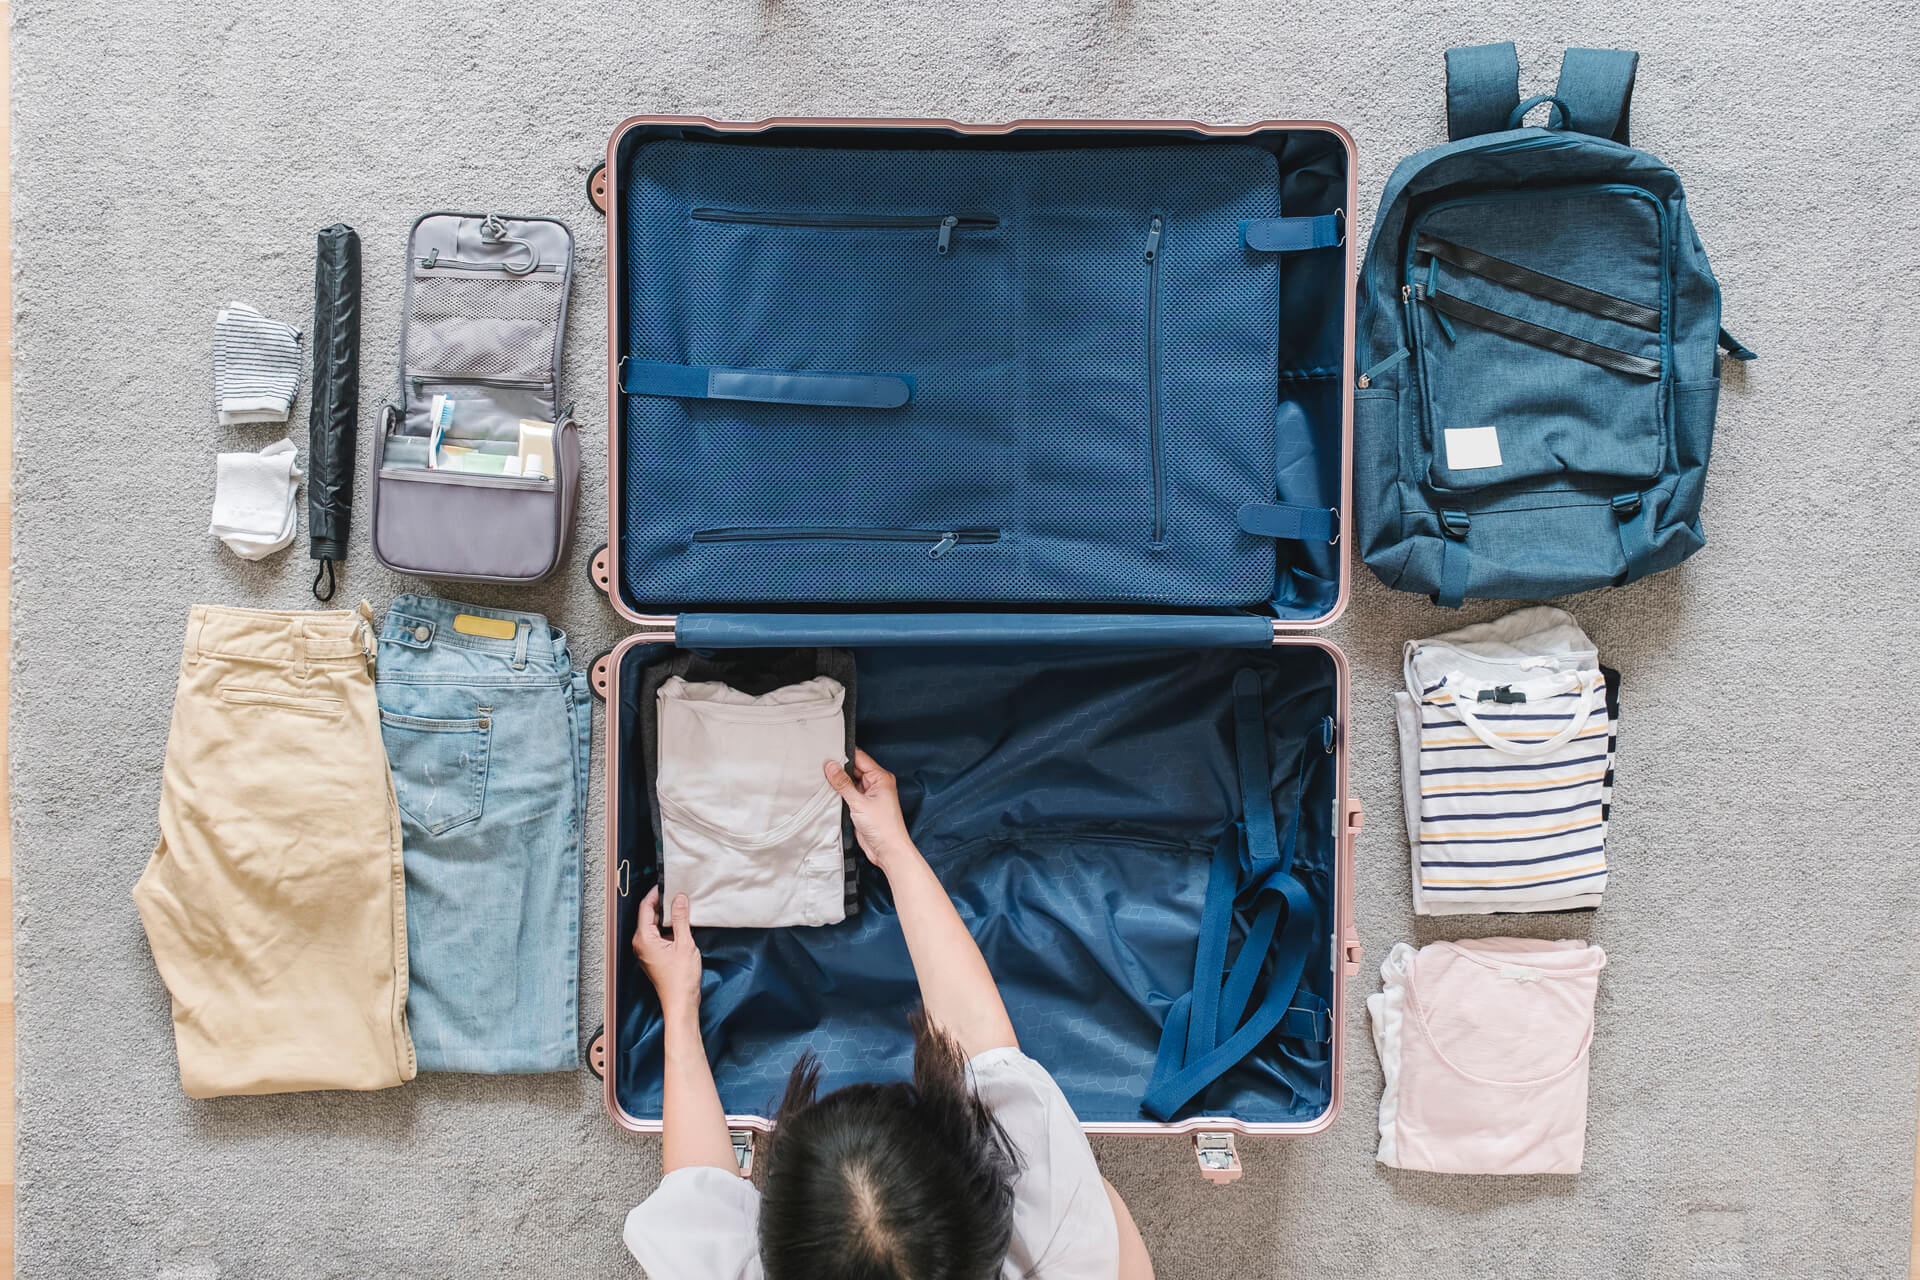 Ya sea que te tomes unas largas vacaciones o hagas un pequeño viaje de fin de semana con tu bebé, hay algunos artículos que no pueden faltar en tu equipaje. Te decimos cuáles son.